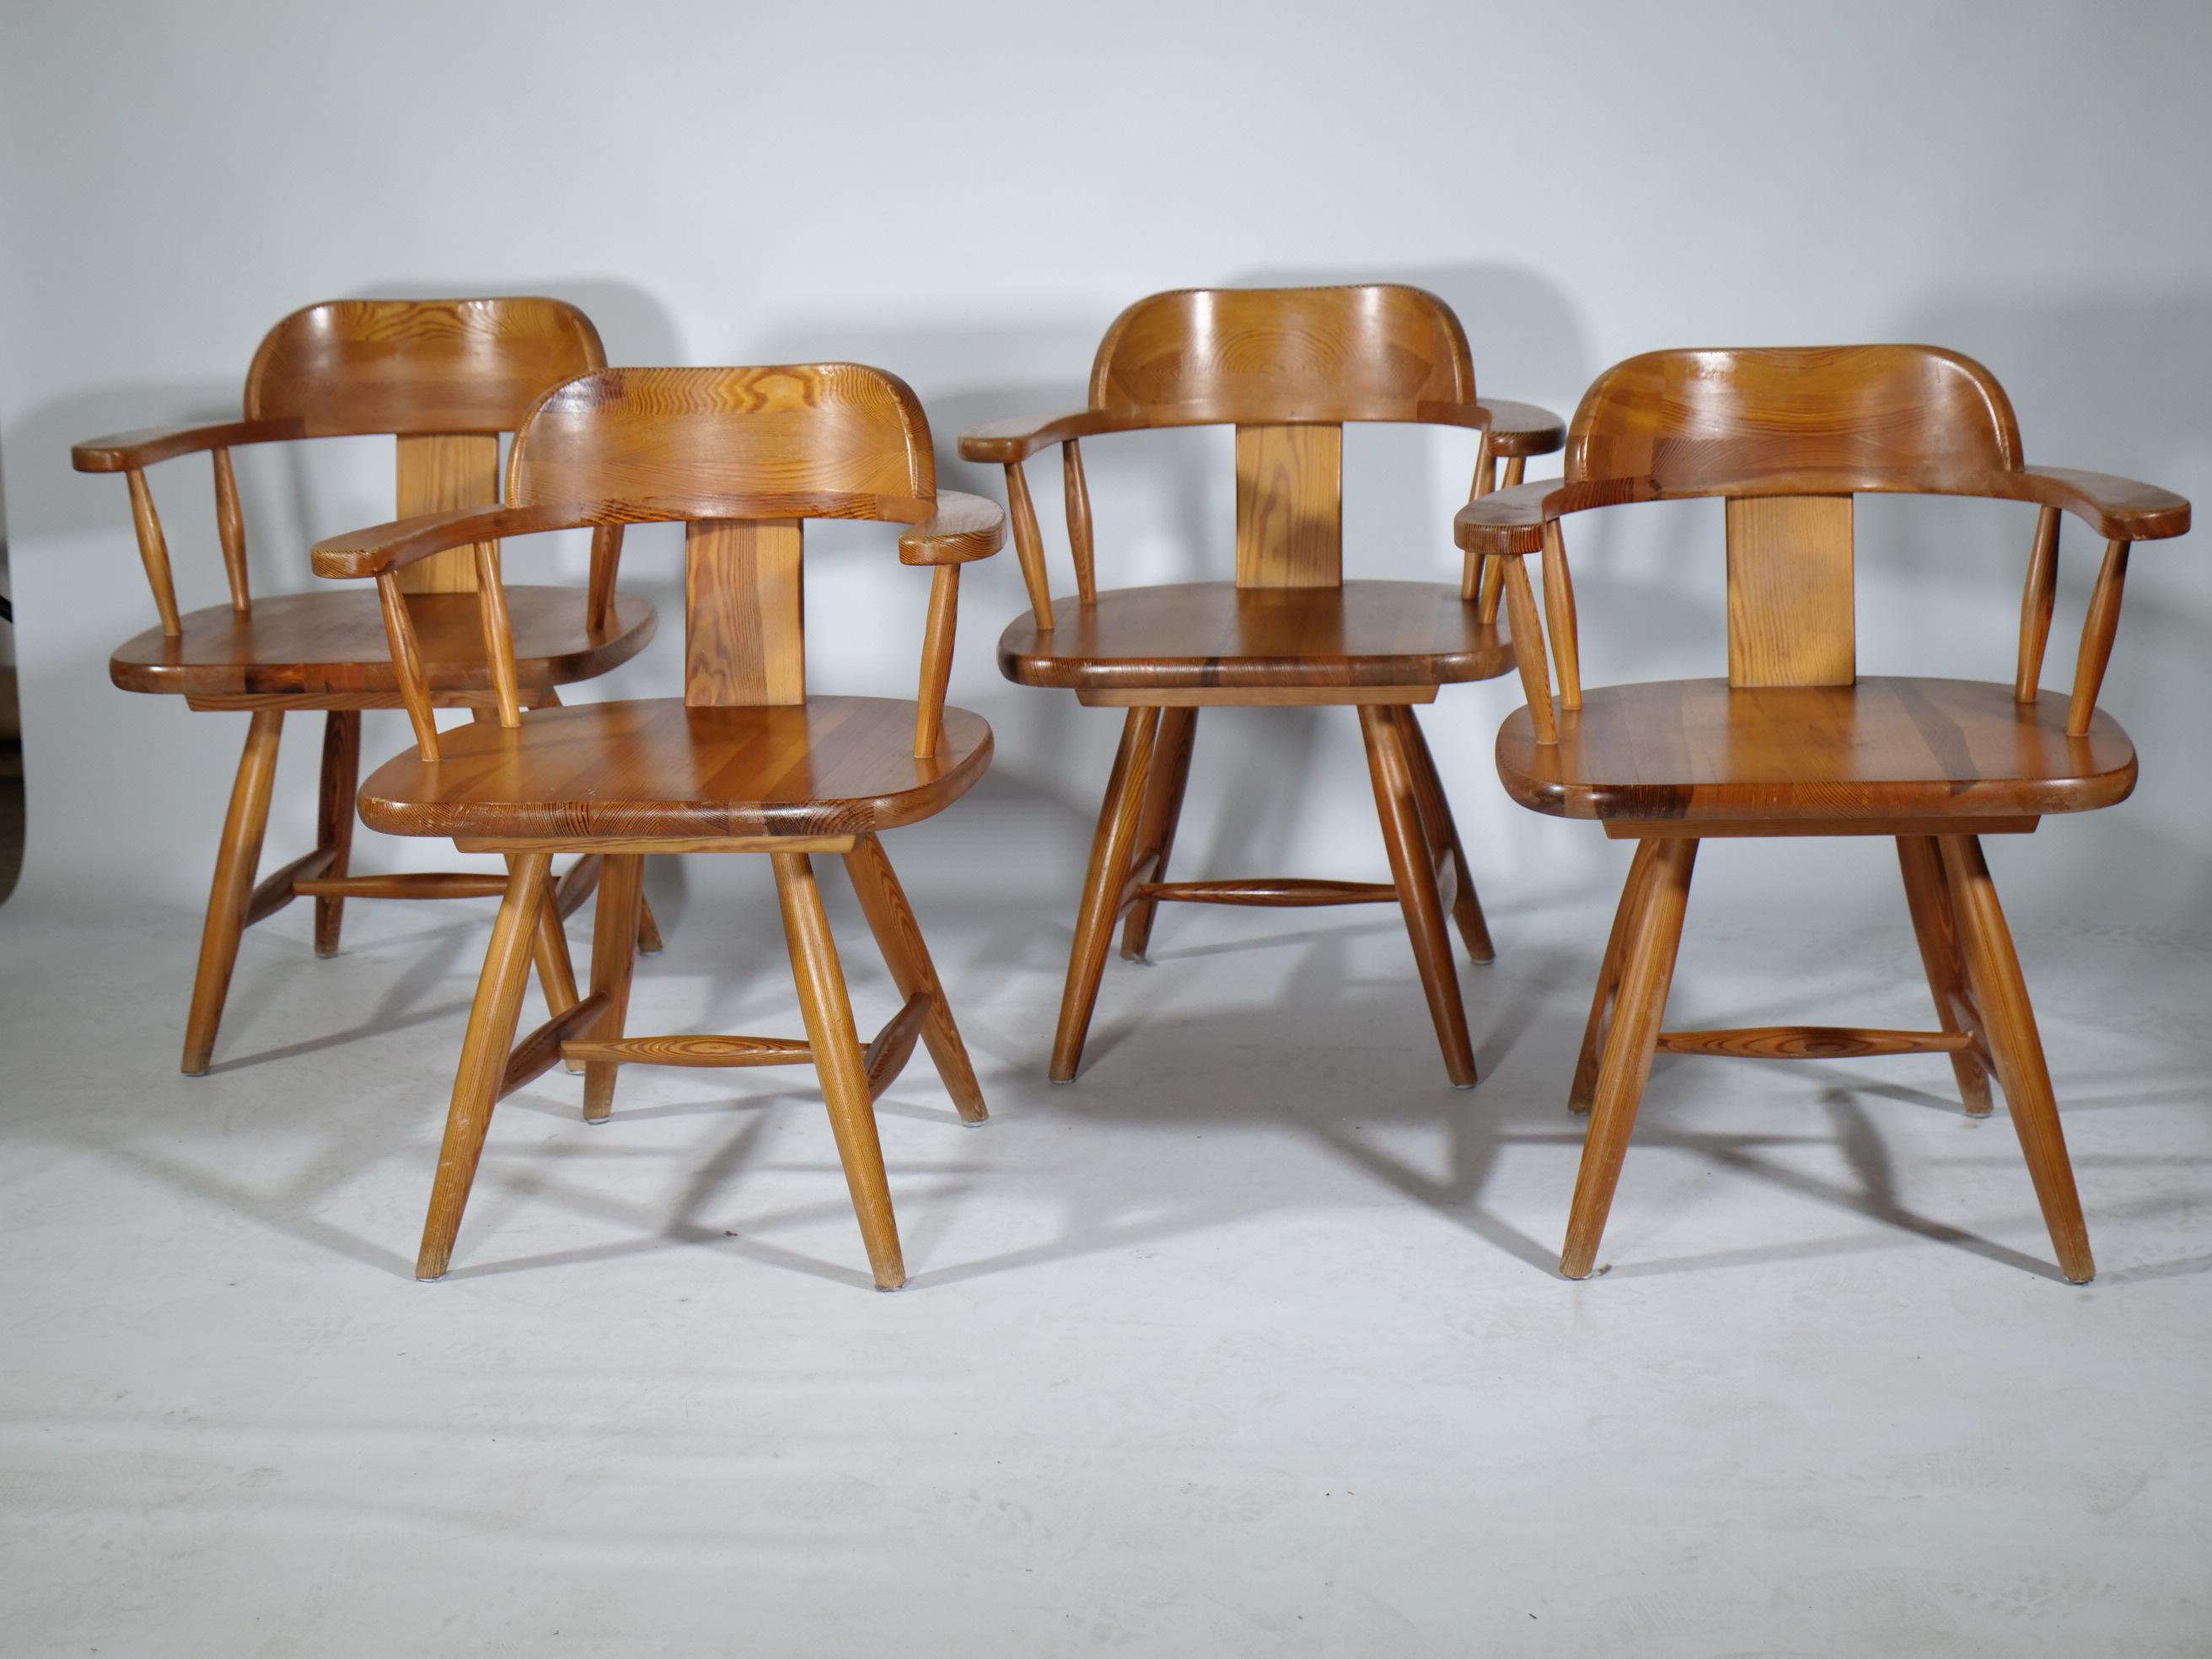 Finnische Massivholz Stühle aus Kiefernholz aus dem Hause Asko. Die Armlehner sind hochwertig gefertigt und in klassischem Skandinavischen Landhaus Stil gehalten. Die Stühle sind in gebrauchtem Zustand. 
 
Breite: 61 cm 
Höhe: 74 cm 
Tiefe: 50